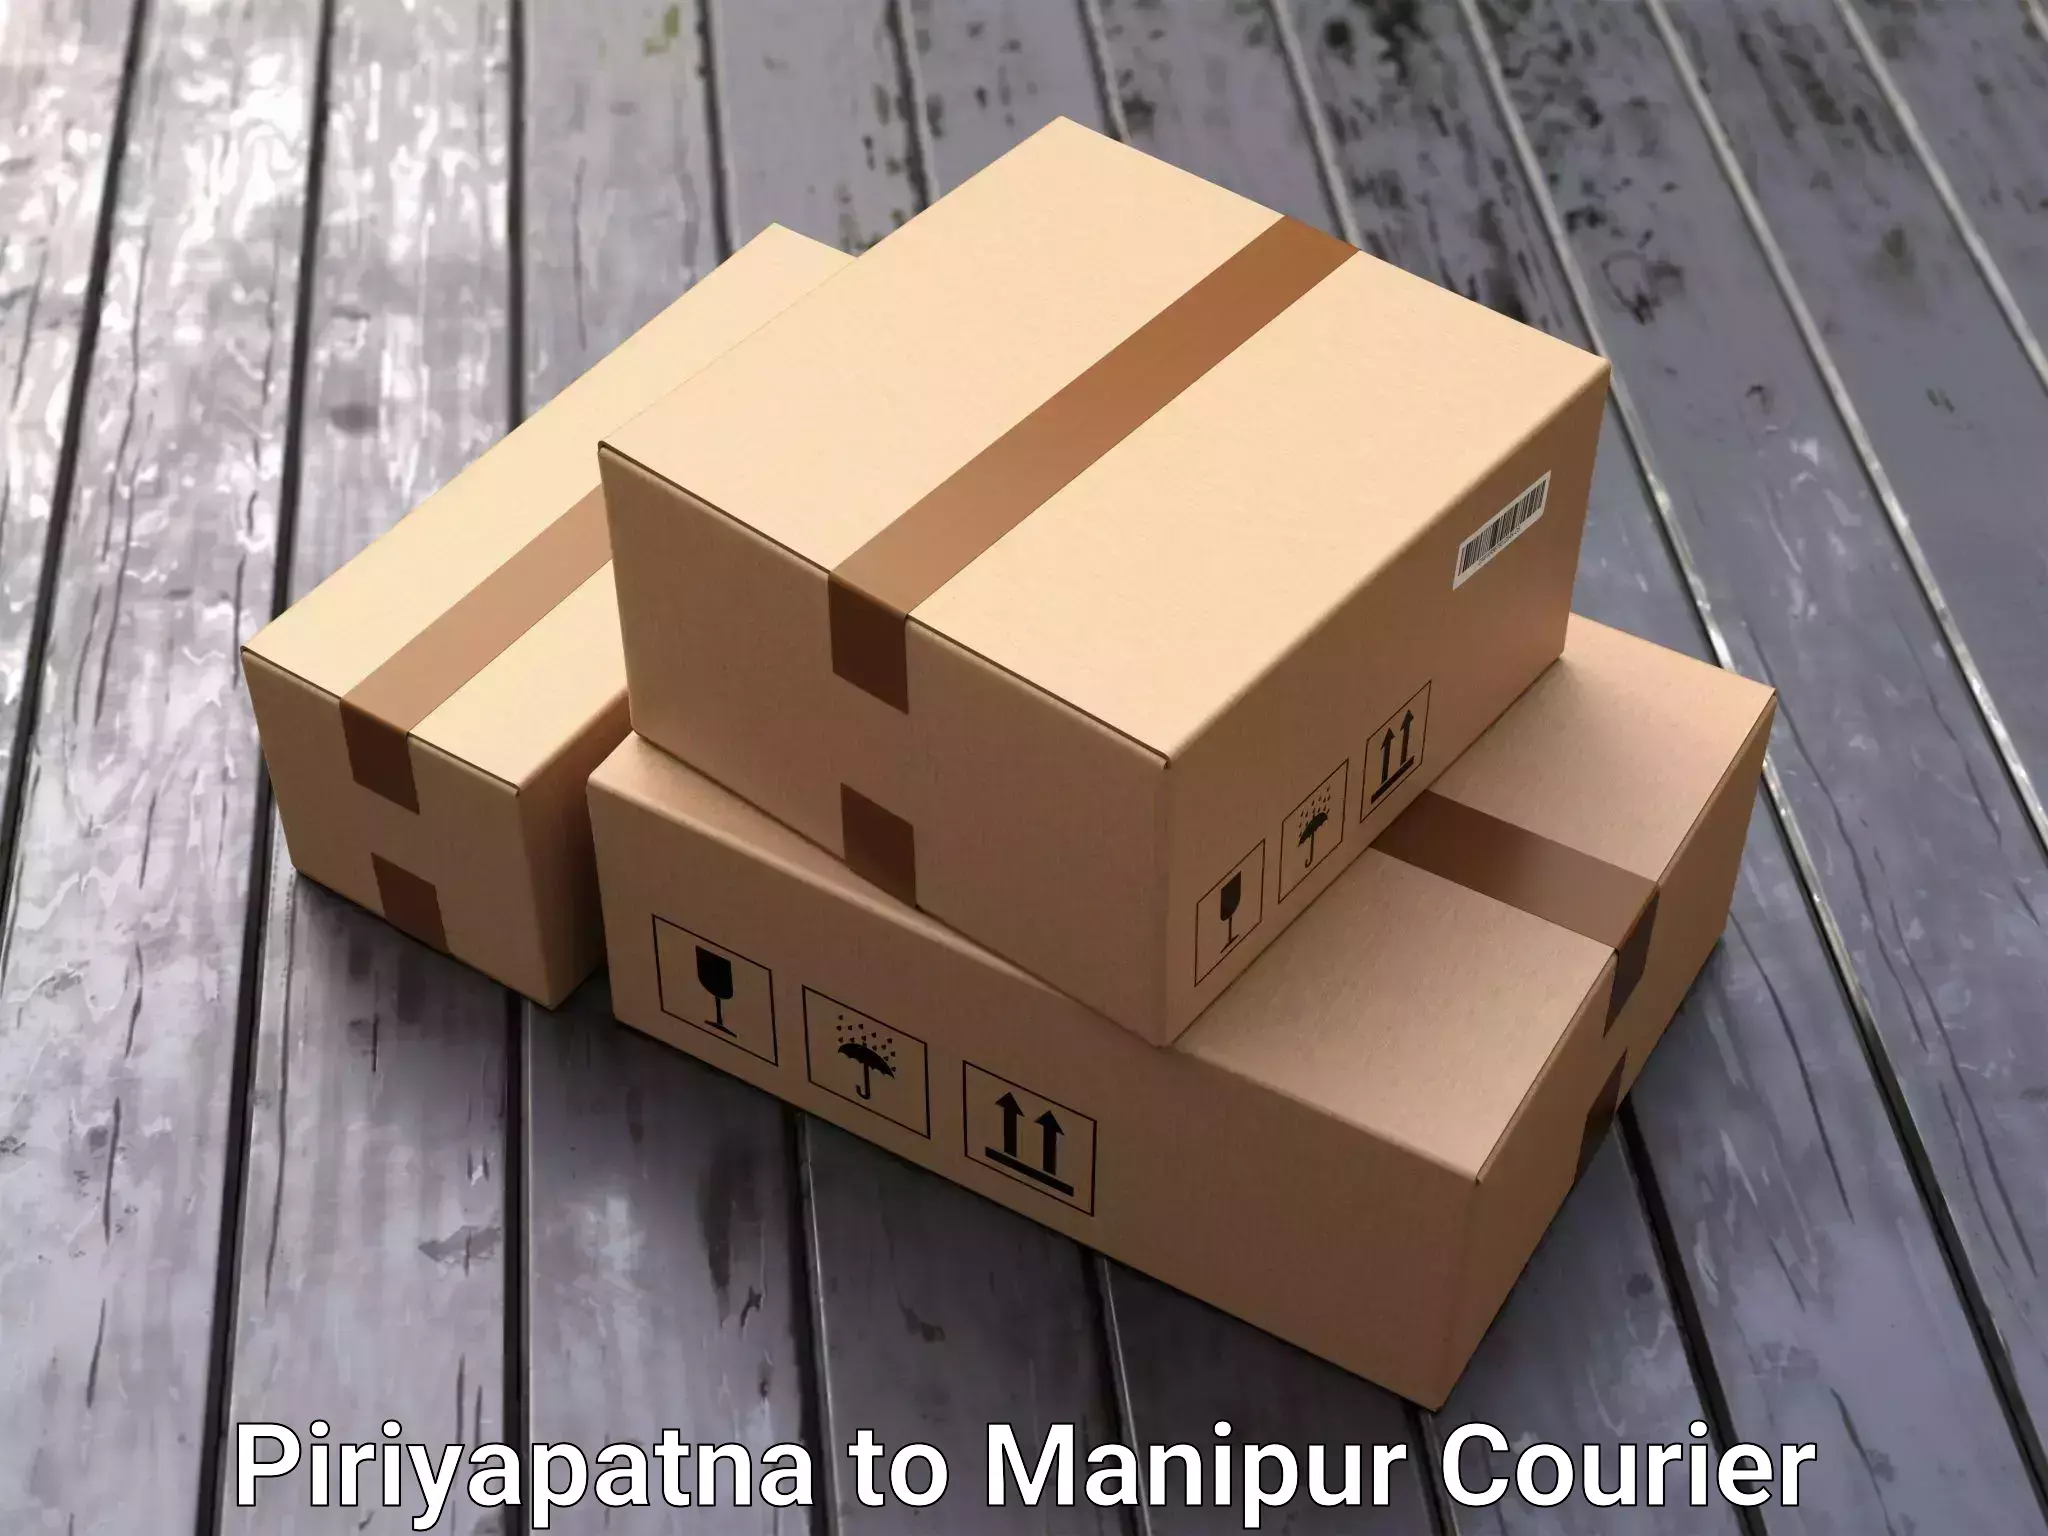 Furniture moving experts Piriyapatna to Manipur